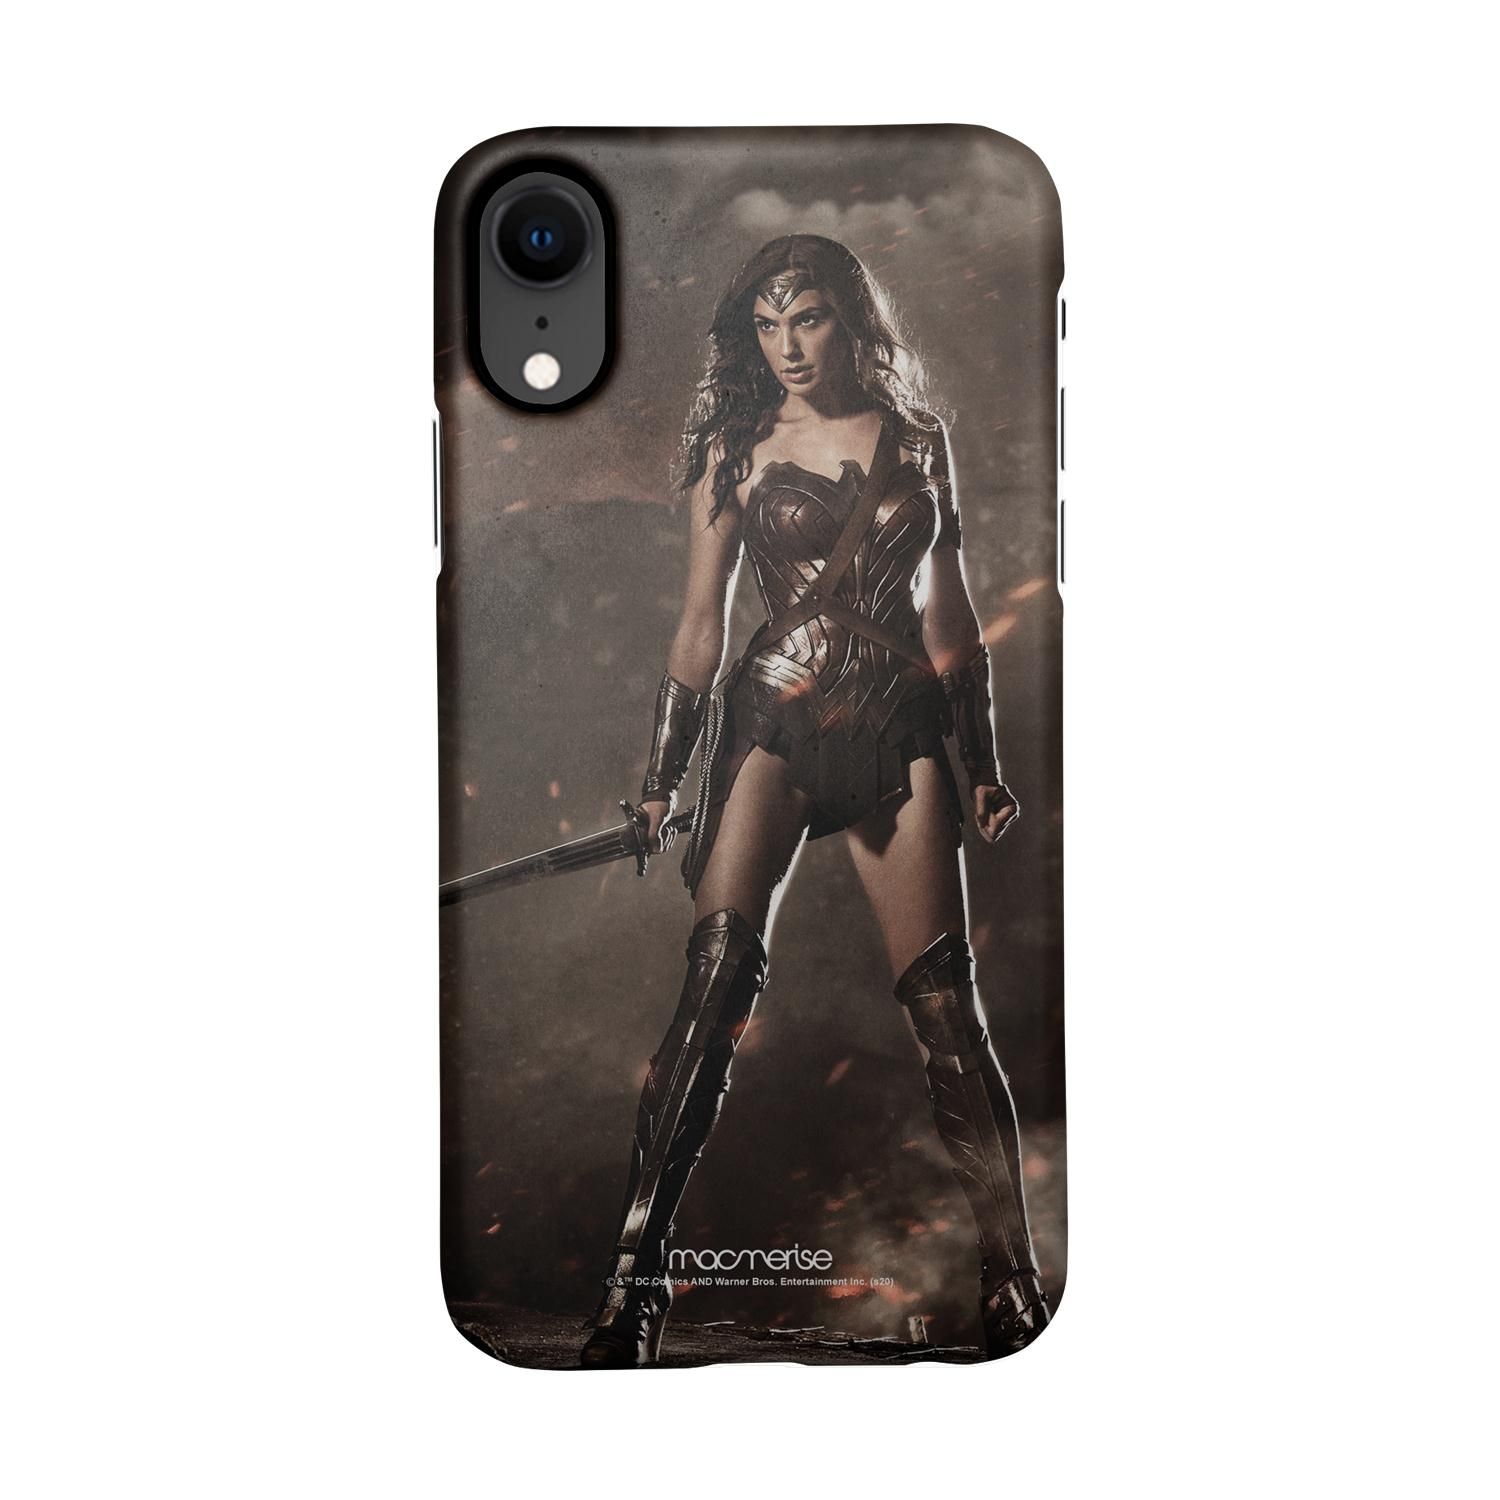 Buy Lethal Wonderwoman - Sleek Phone Case for iPhone XR Online